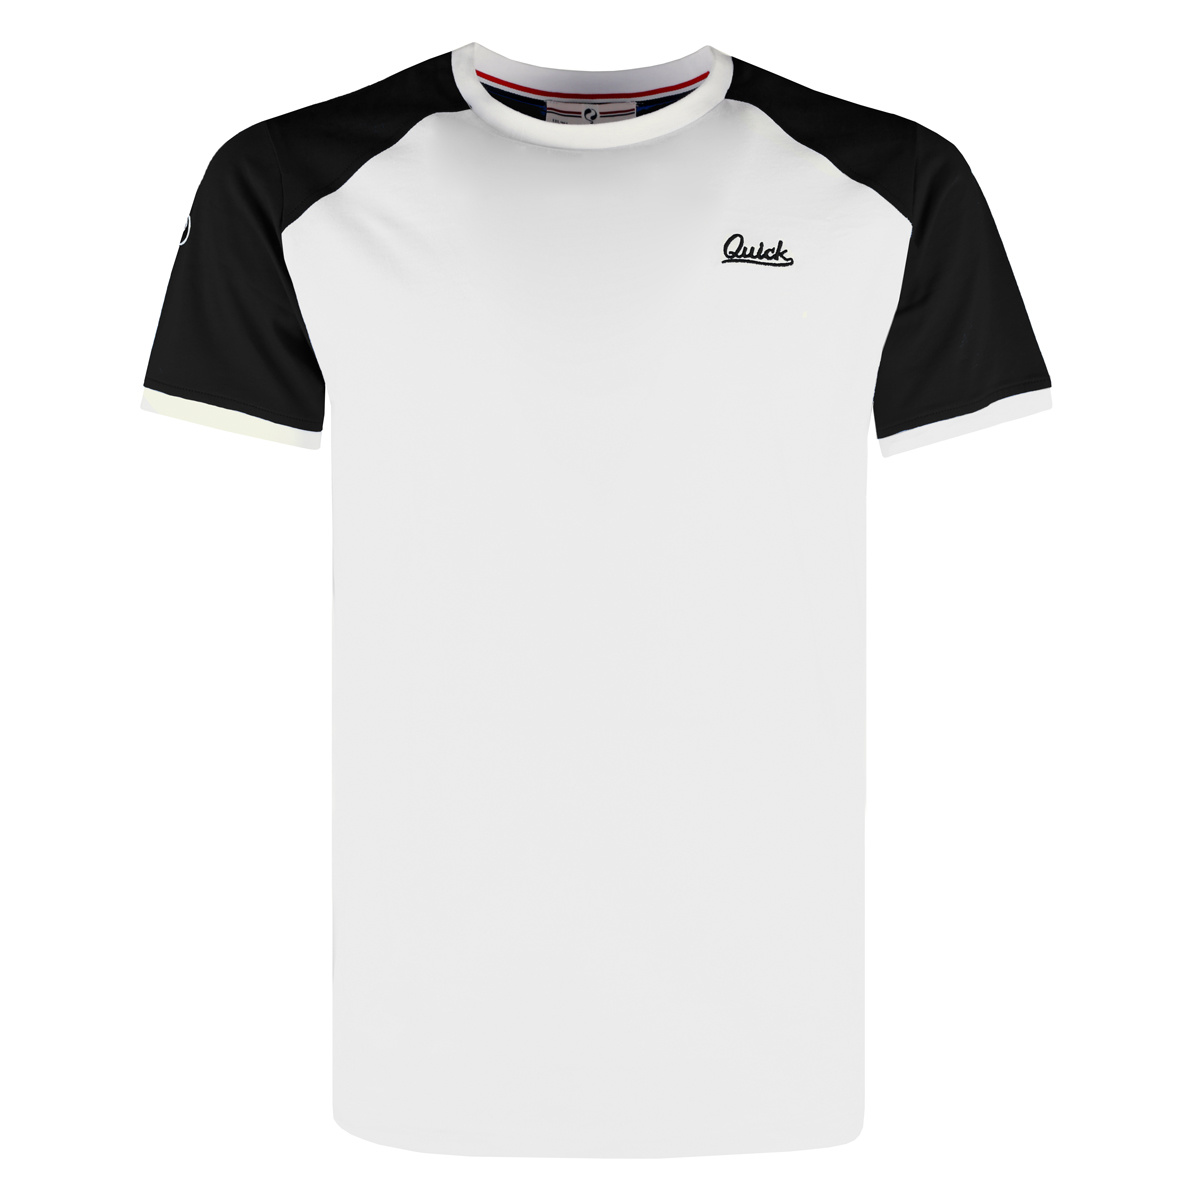 Woning Recensent Traditioneel Heren T-shirt Strike - Wit/Zwart - Q1905